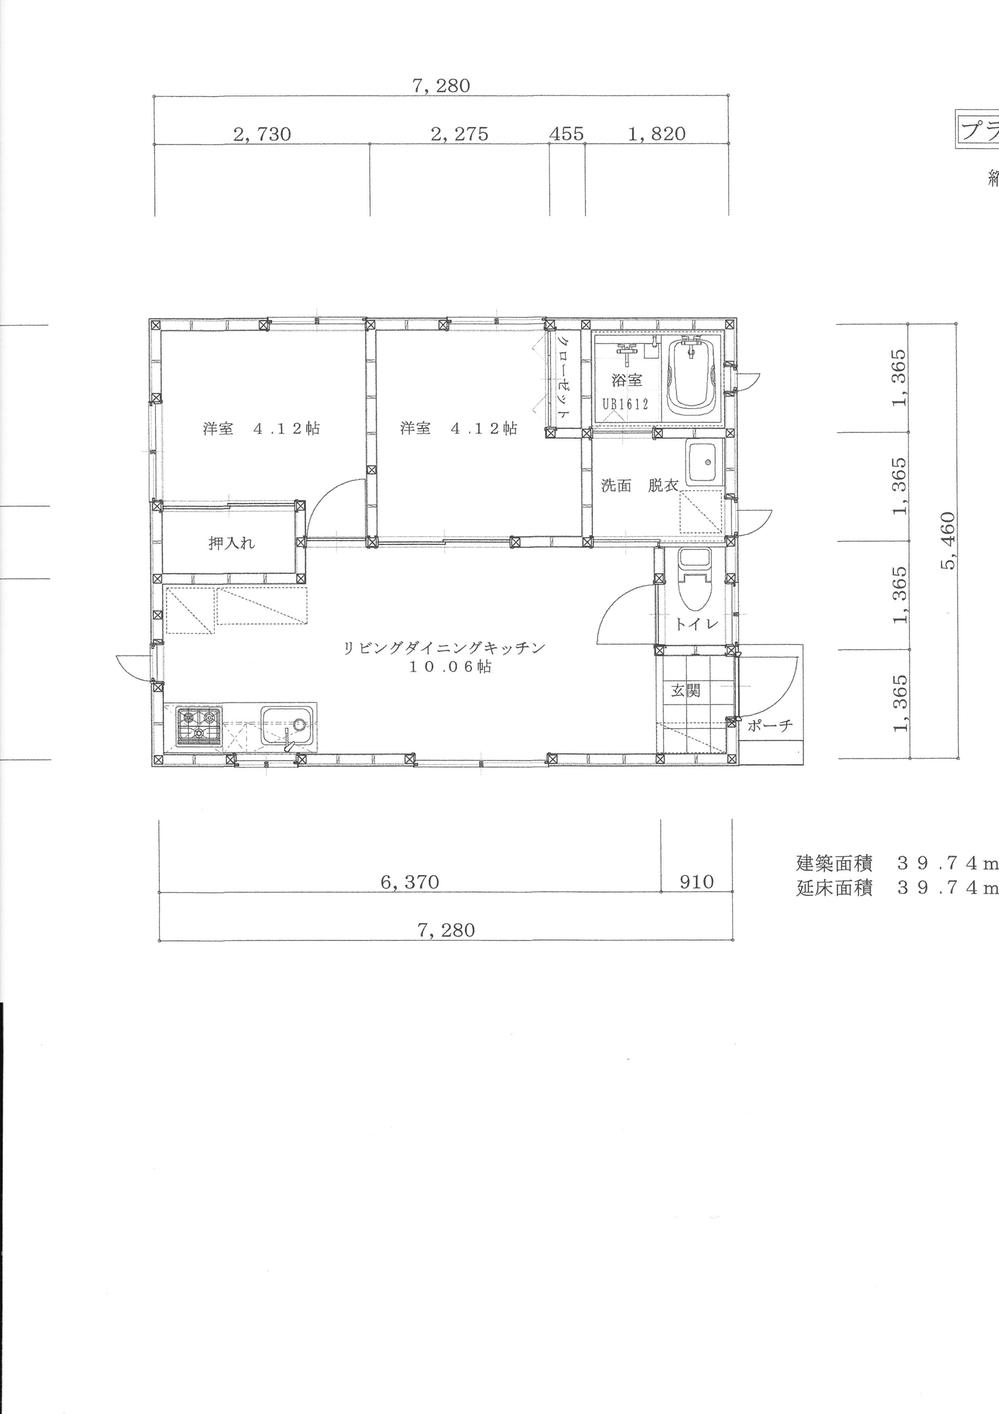 Floor plan. 12.5 million yen, 2LDK, Land area 660 sq m , Building area 39.74 sq m